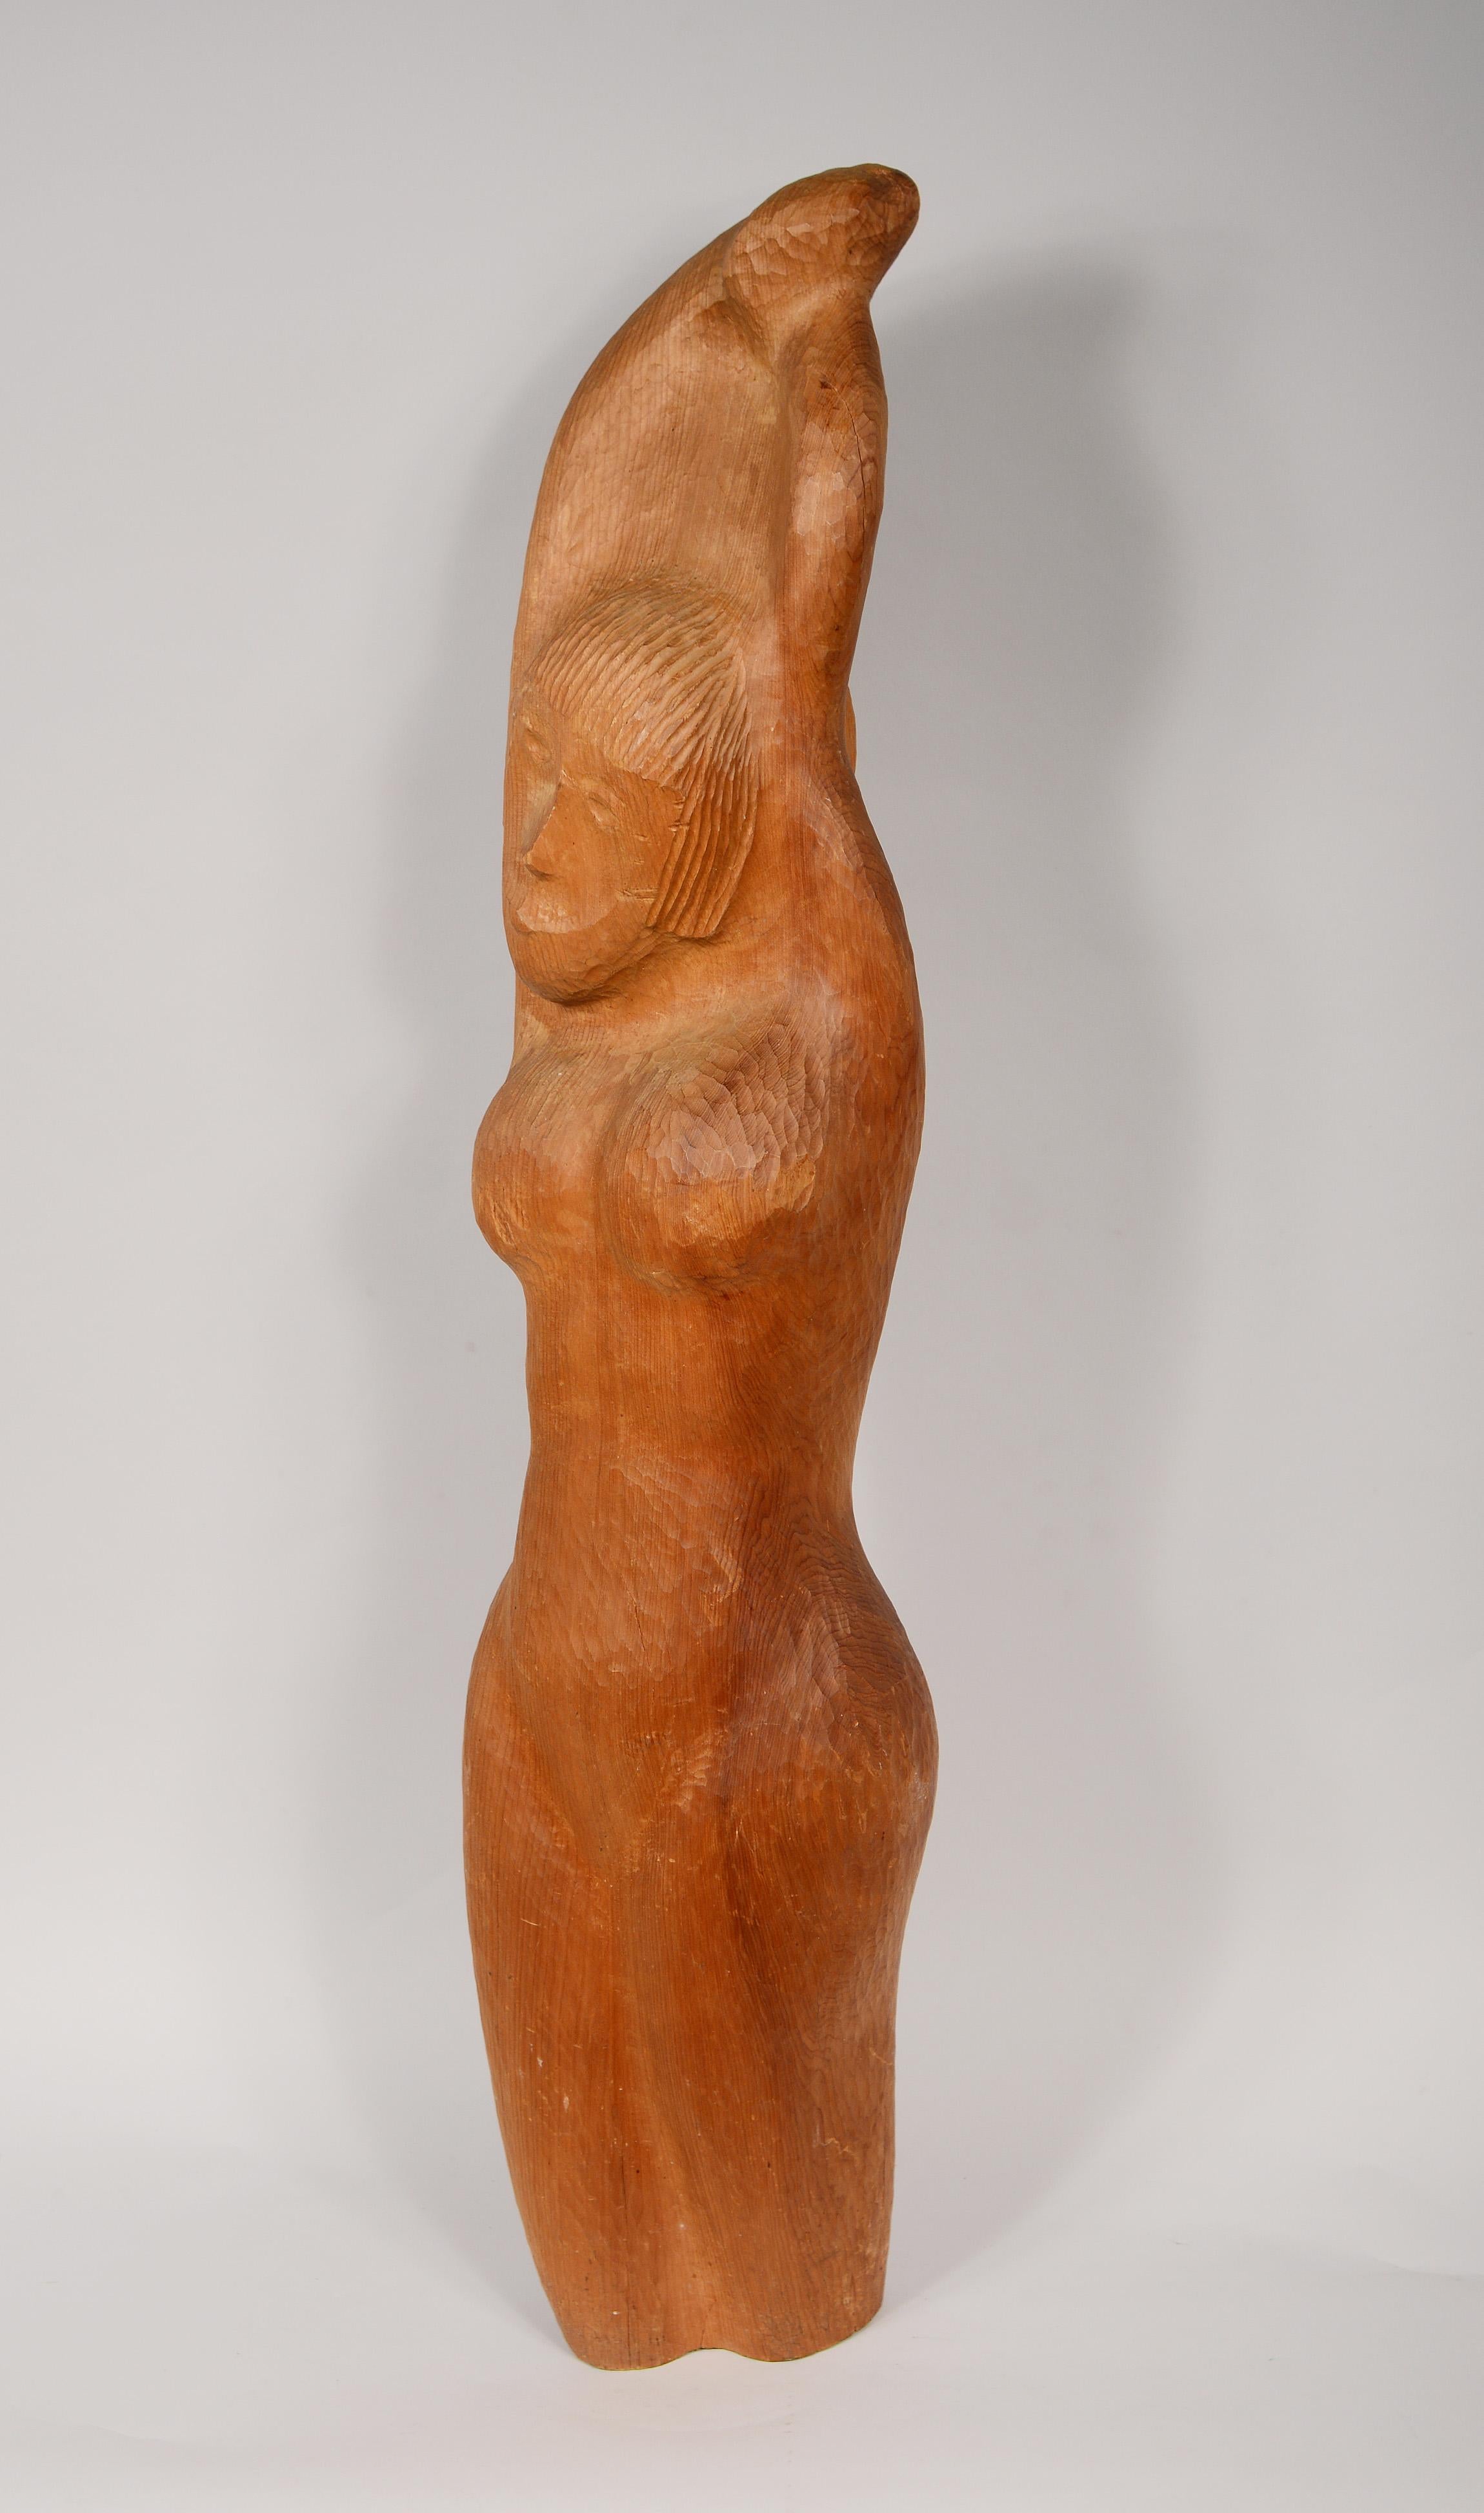 Grande spéléologie Folk Art d'une femme nue. Ce travail a été réalisé par un géologue et professeur en tant que hobby. La sculpture présente des marques, des bosses, des éraflures et de l'usure.